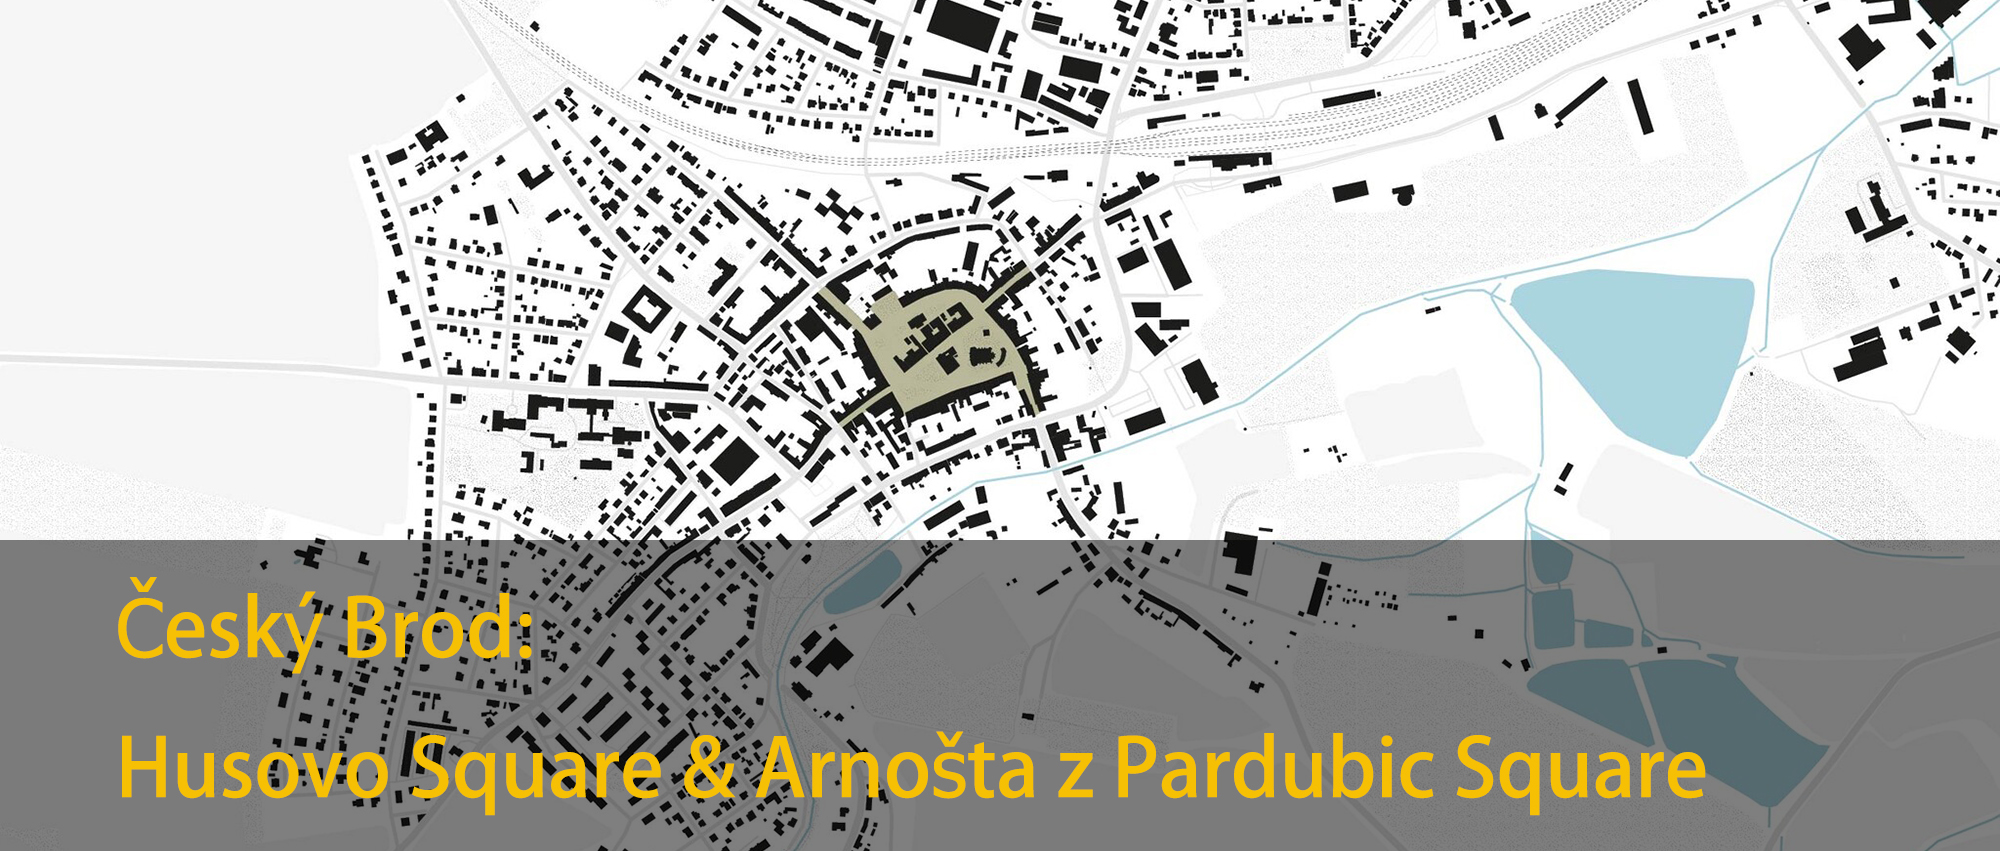 重塑捷克布罗德市胡索沃广场和阿诺什塔·帕尔杜比克广场设计竞赛-CNYISAI艺赛